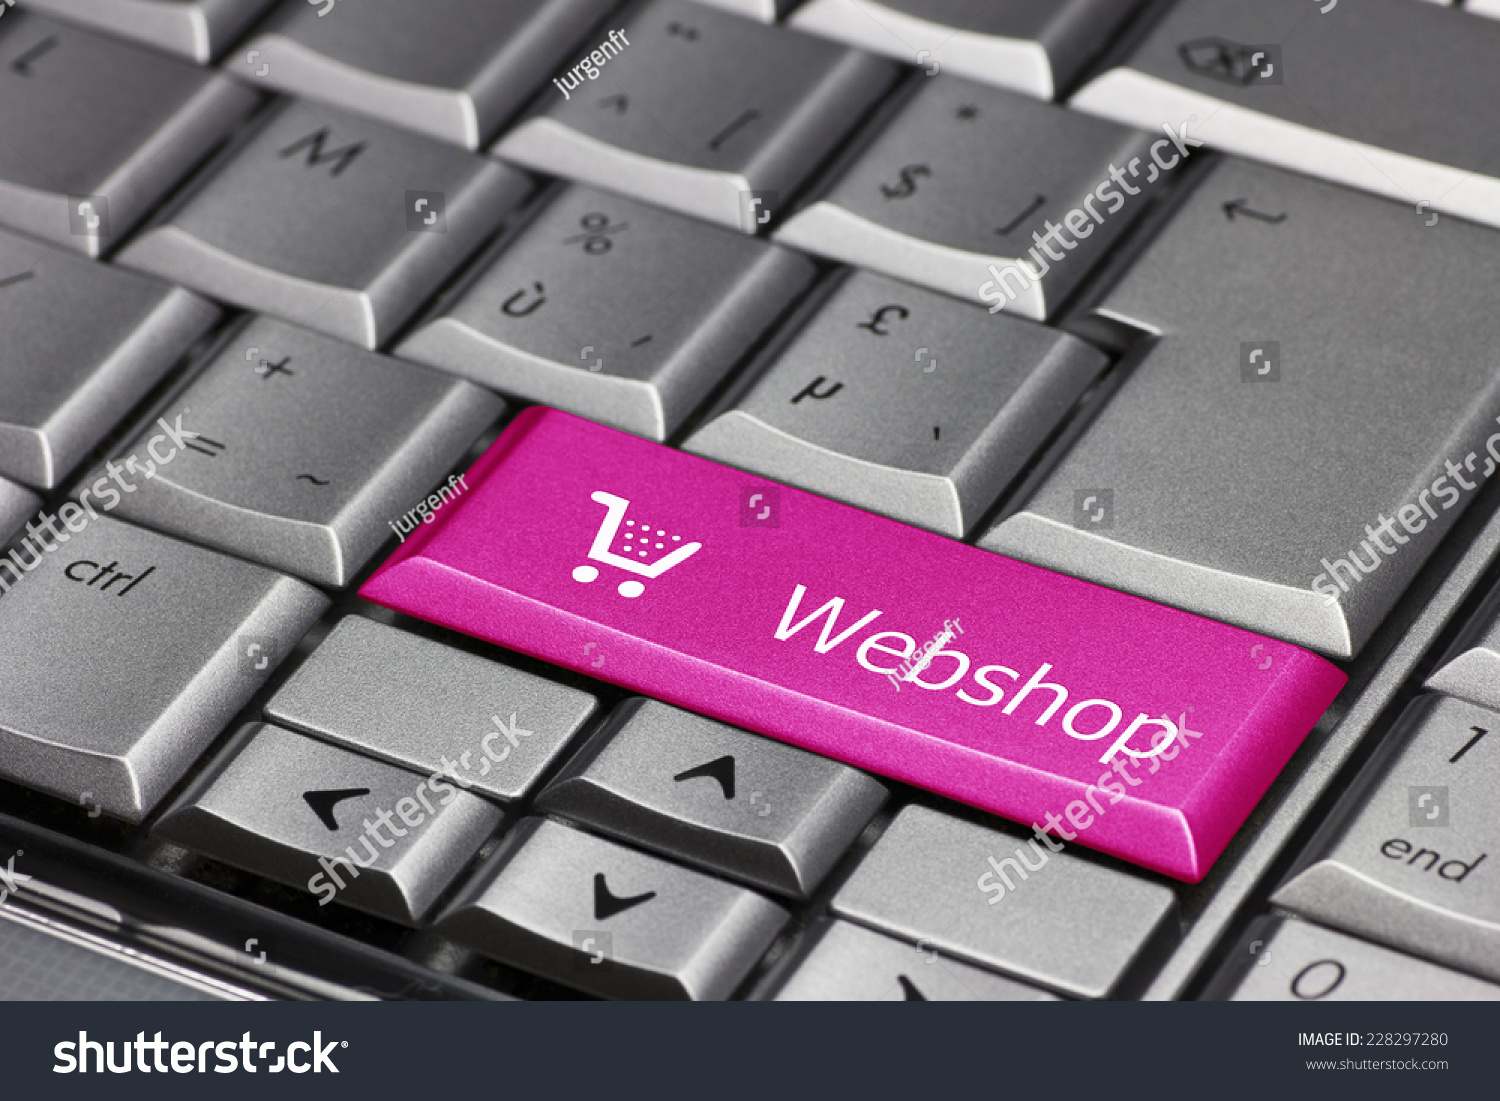 Identiteit Lyrisch Mooie vrouw Computer Key Pink Webshop Cart Symbol Stock Photo (Edit Now) 228297280